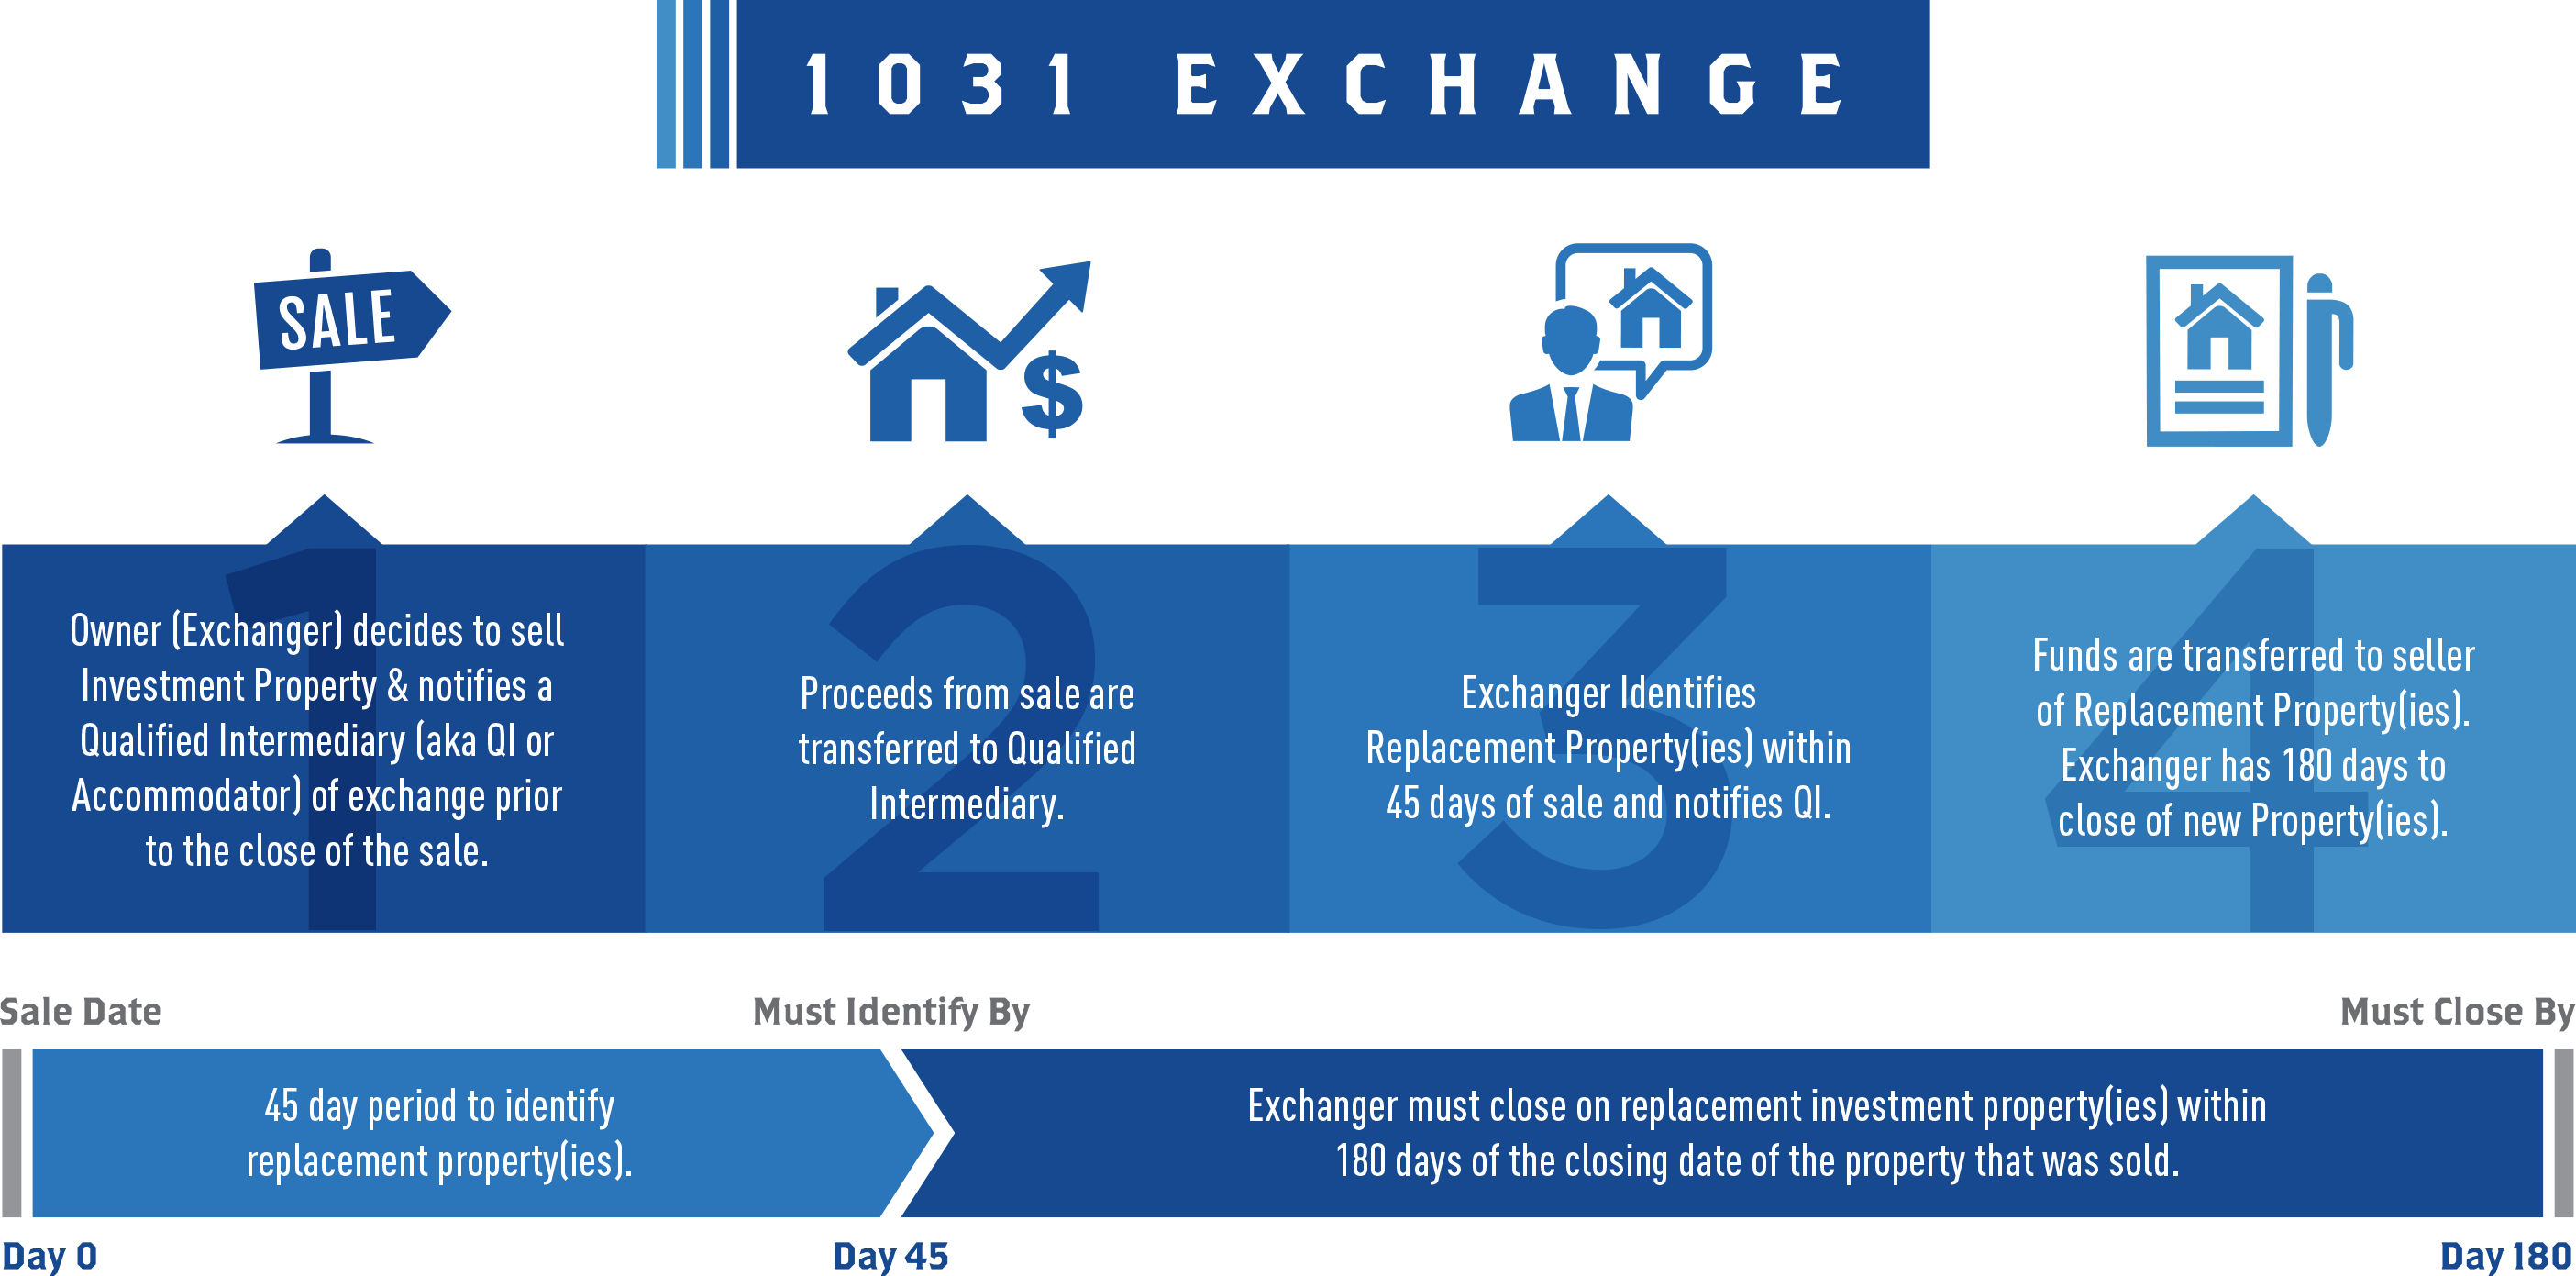 1031 exchange timeline